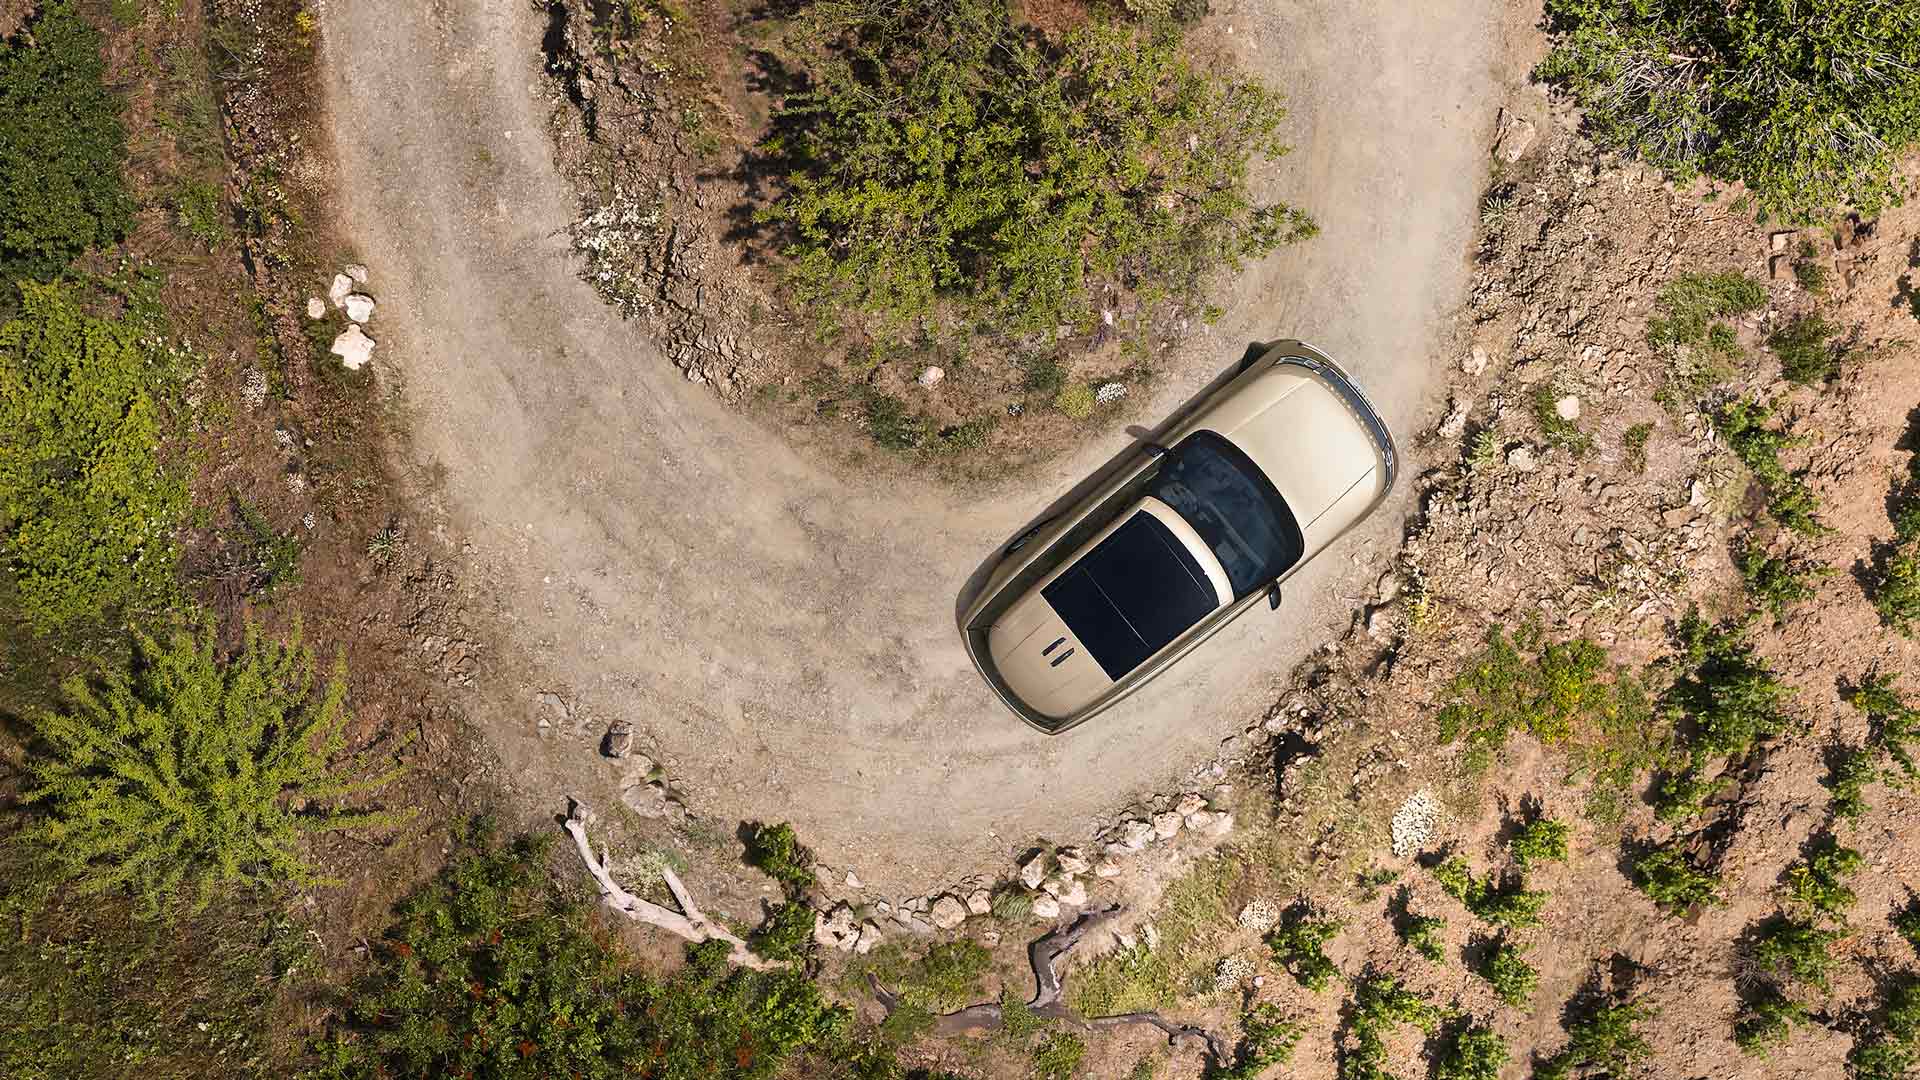 Detalle desde arriba del Nuevo Range Rover